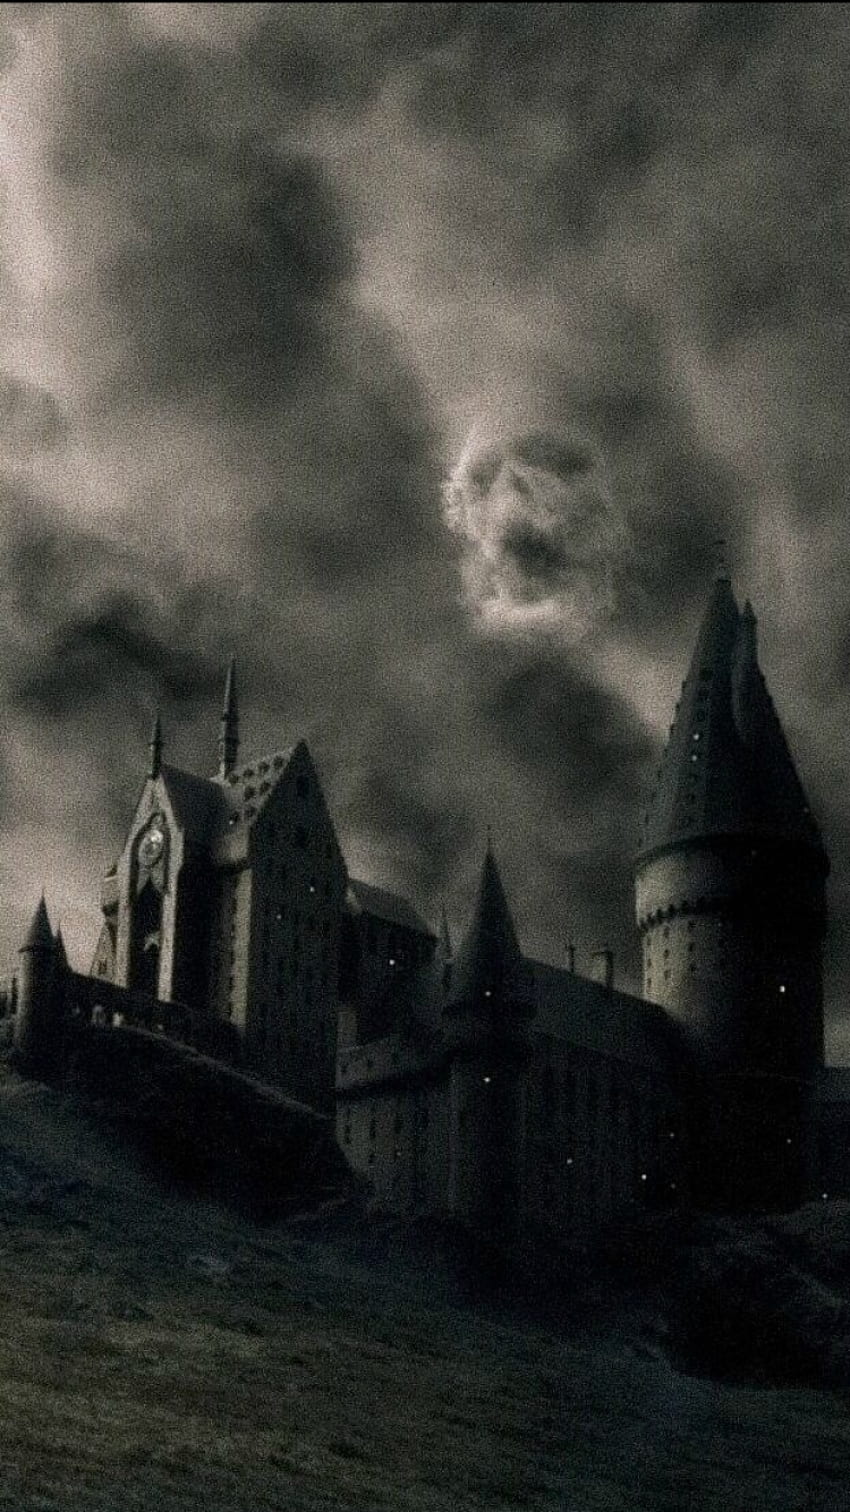 Hogwarts, langit, kegelapan, fenomena atmosfer, suasana, Arsitektur, Kastil, hitam dan putih, graphy, awan, bangunan, Castle Black and White wallpaper ponsel HD